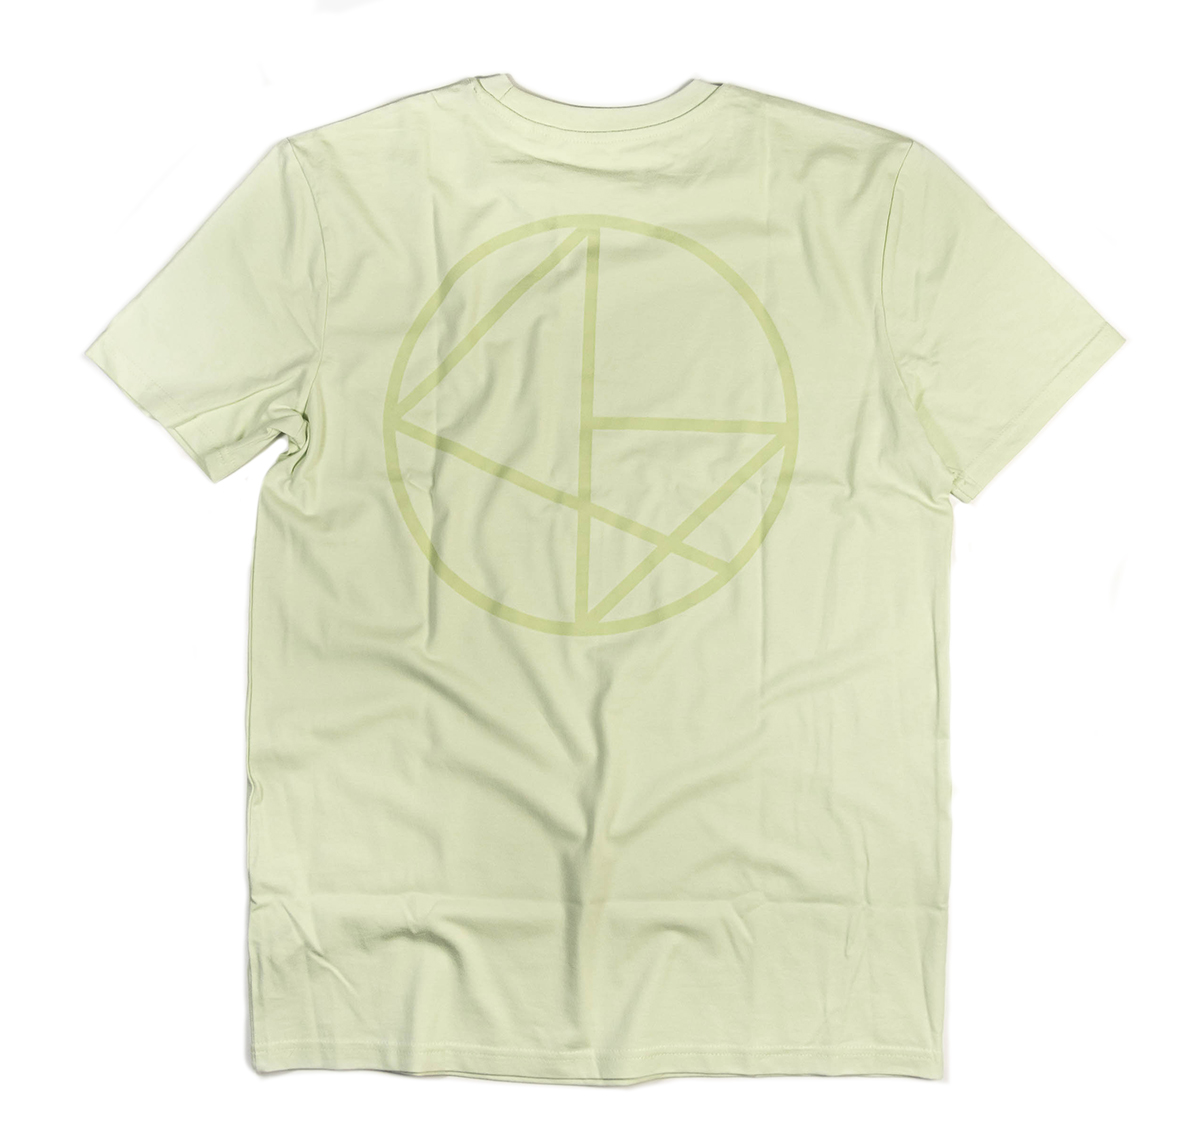 NOMAD Logo Shirt - Vintage Pastels - Green back